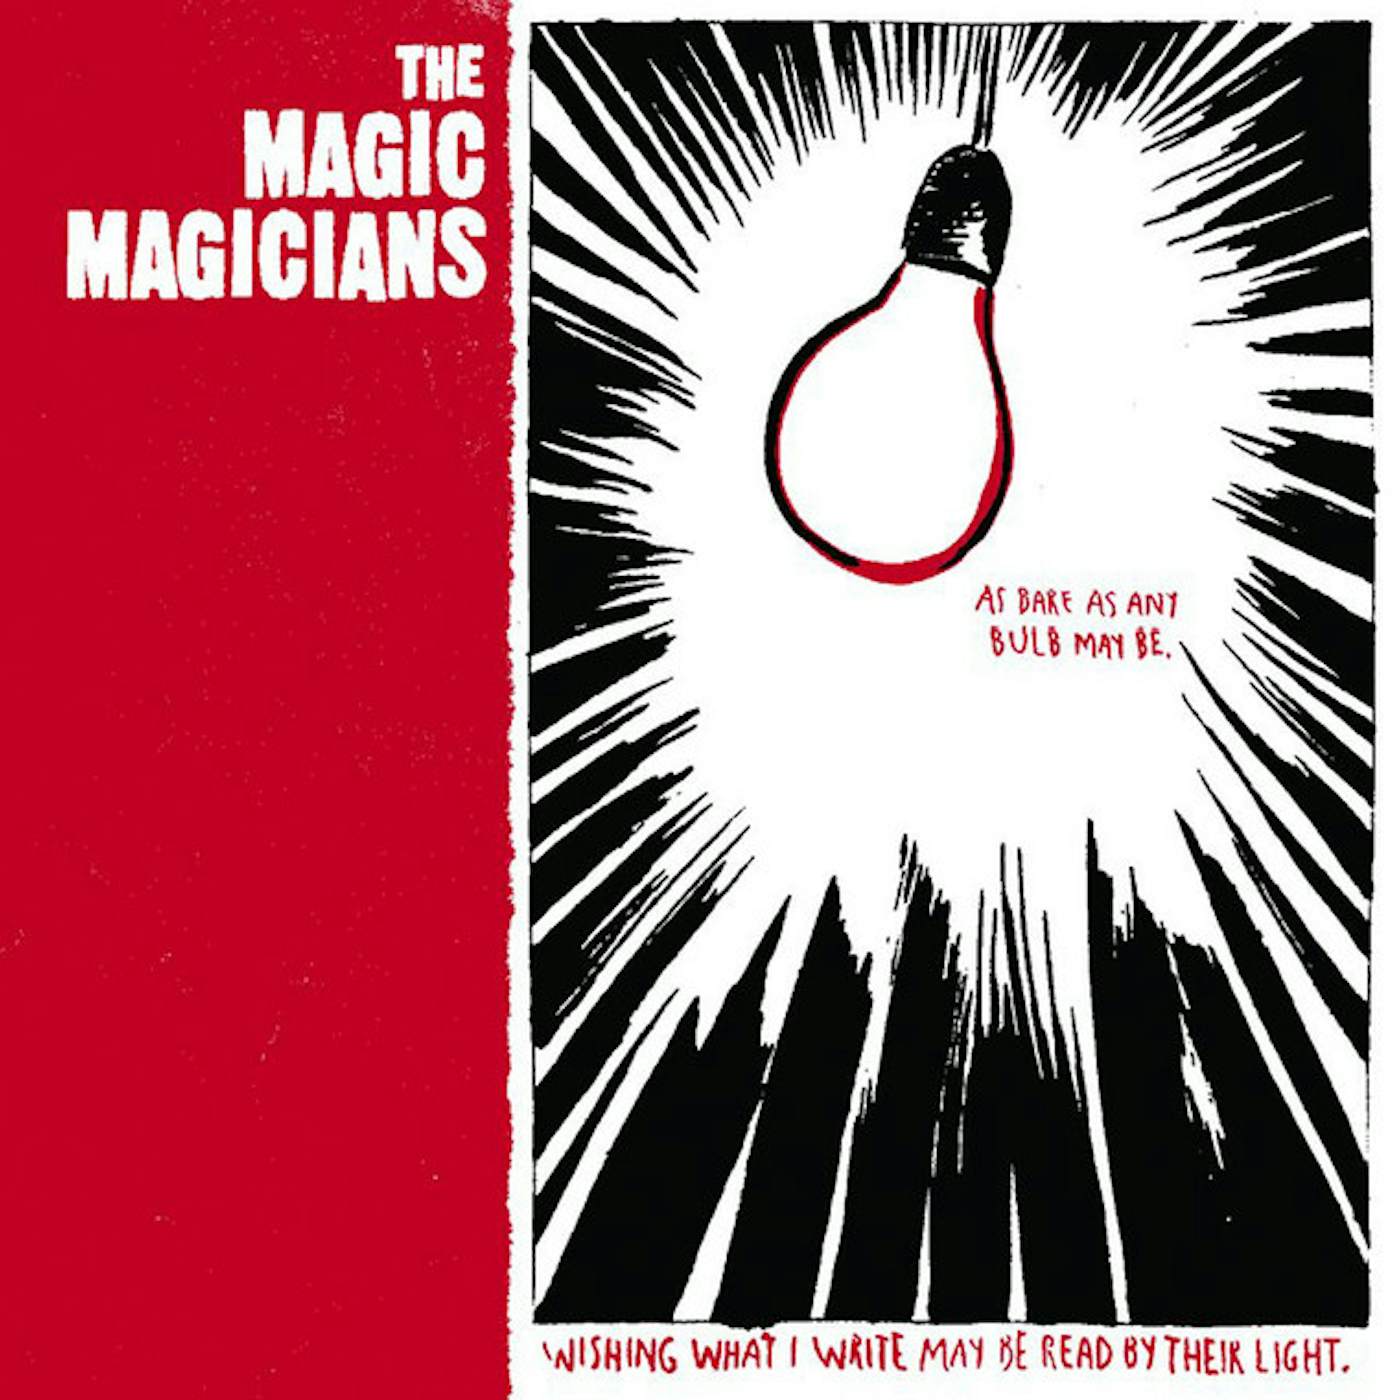 The Magic Magicians CD